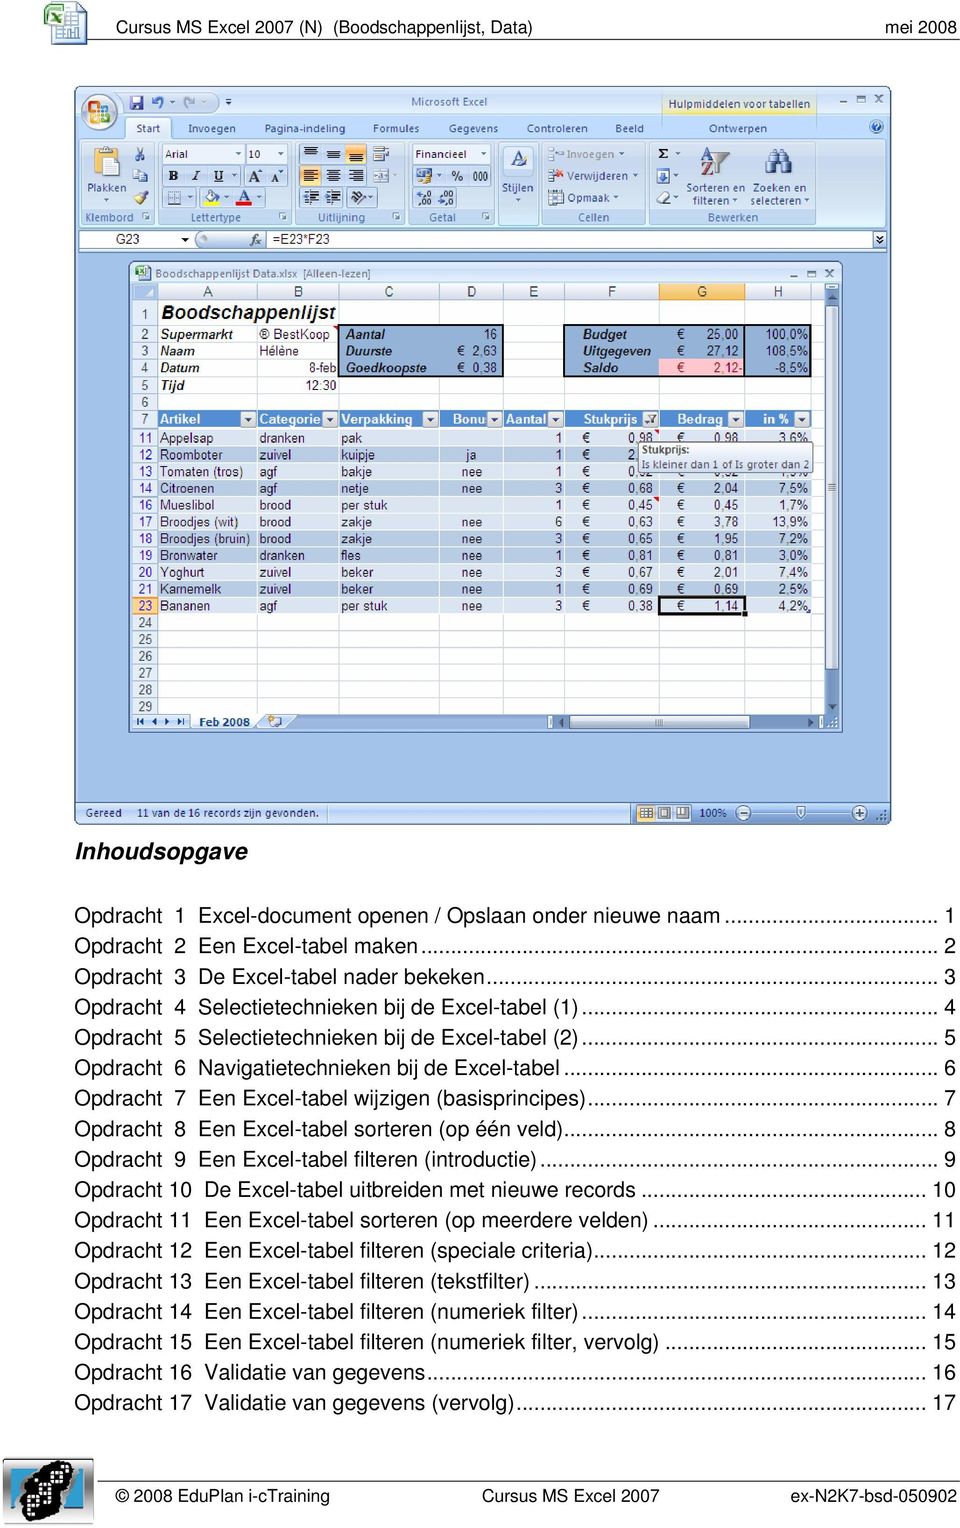 .. 5 Opdracht 6 Navigatietechnieken bij de Excel-tabel... 6 Opdracht 7 Een Excel-tabel wijzigen (basisprincipes)... 7 Opdracht 8 Een Excel-tabel sorteren (op één veld).